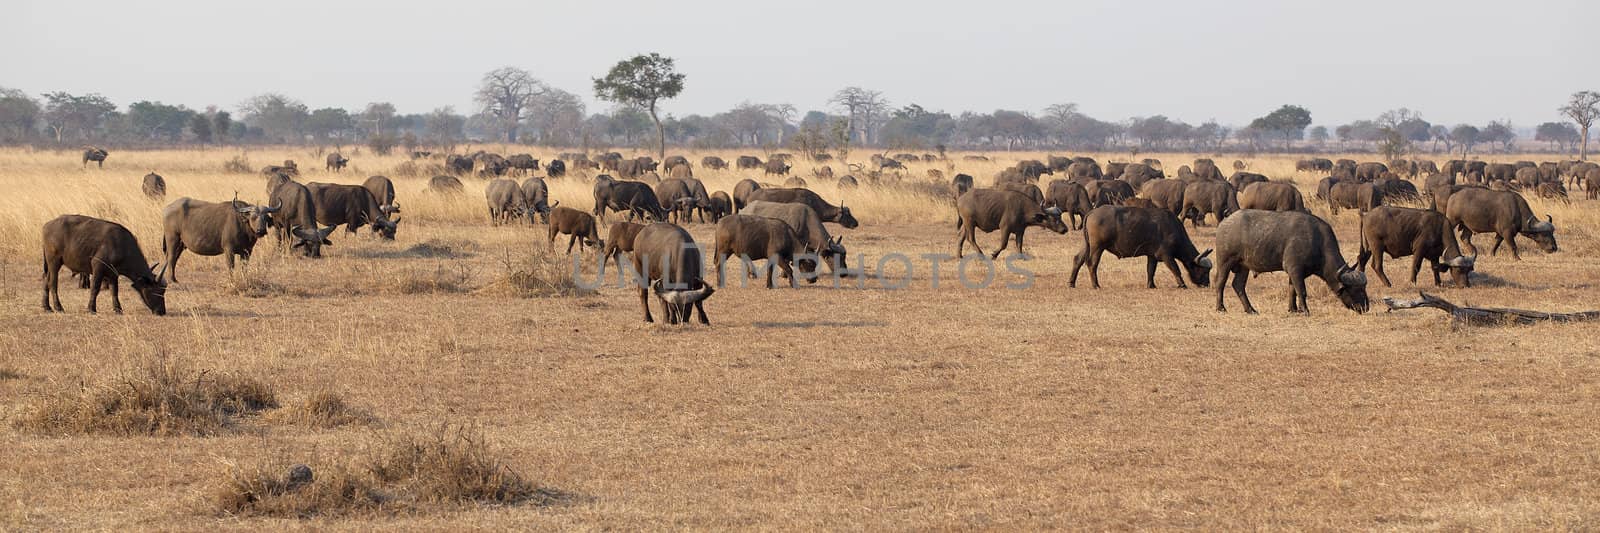 Wild African Buffalo by kjorgen